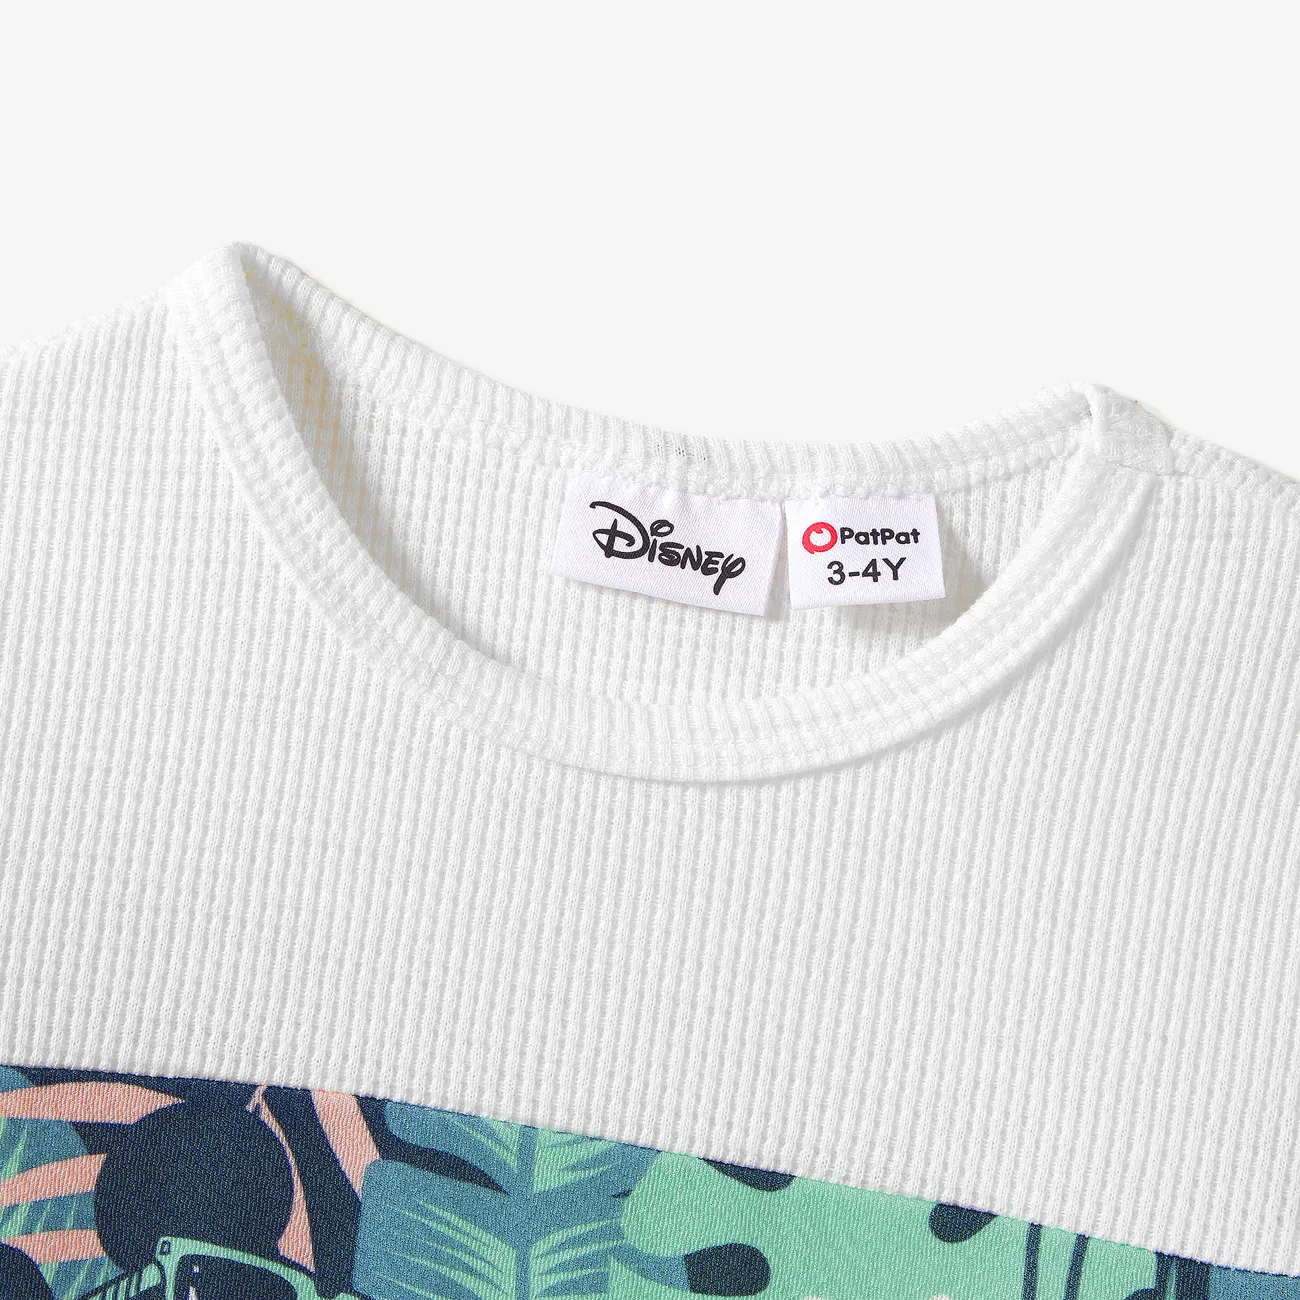 Disney Mickey and Friends Familien-Looks Tropische Pflanzen und Blumen Kurzärmelig Familien-Outfits Sets Grün Weiß big image 1